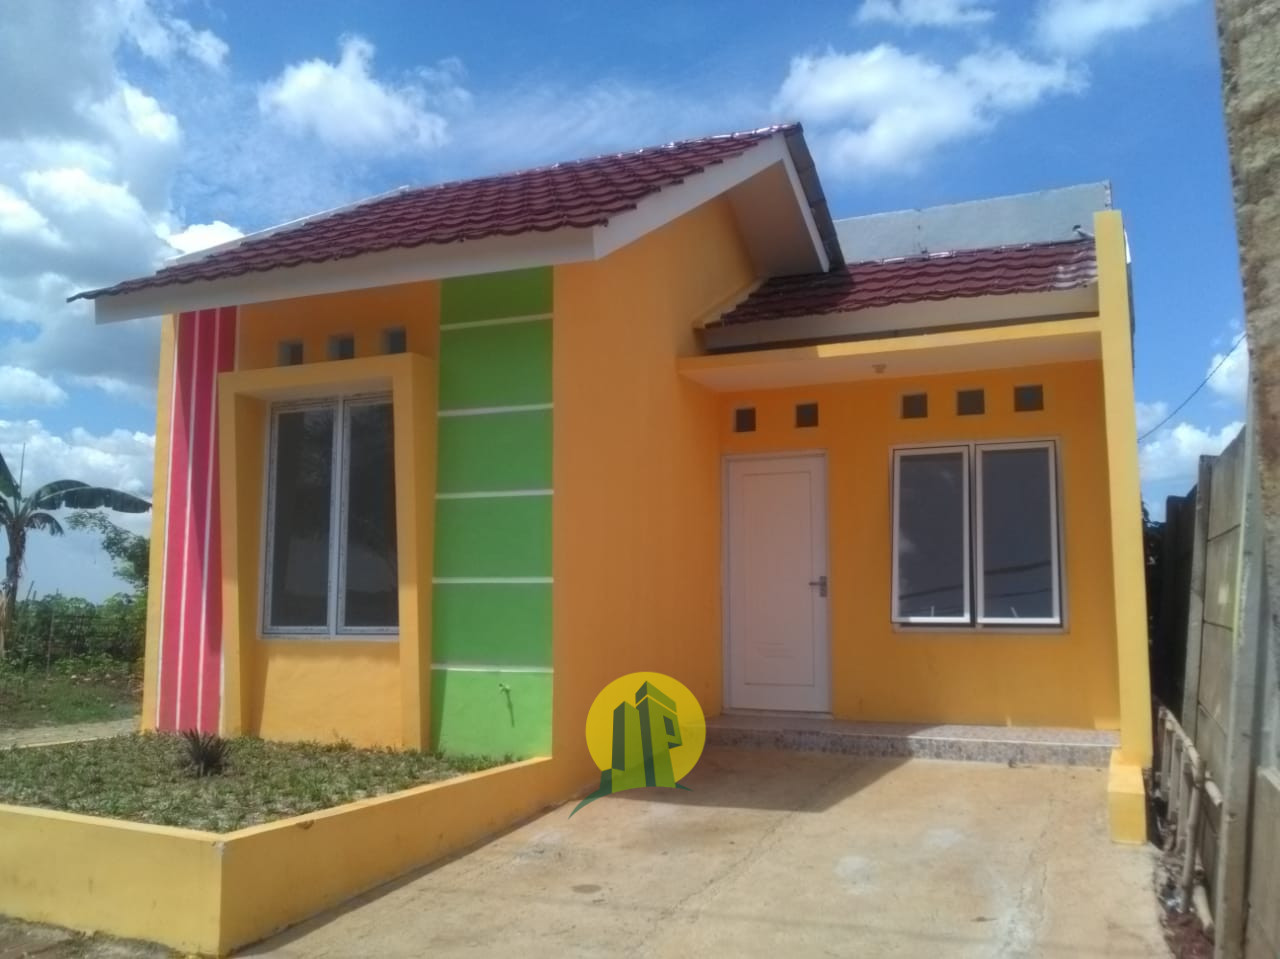 Rumah Subsidi Berkualitas  di Tigaraksa, Kab.Tangerang Via Bank Syariah